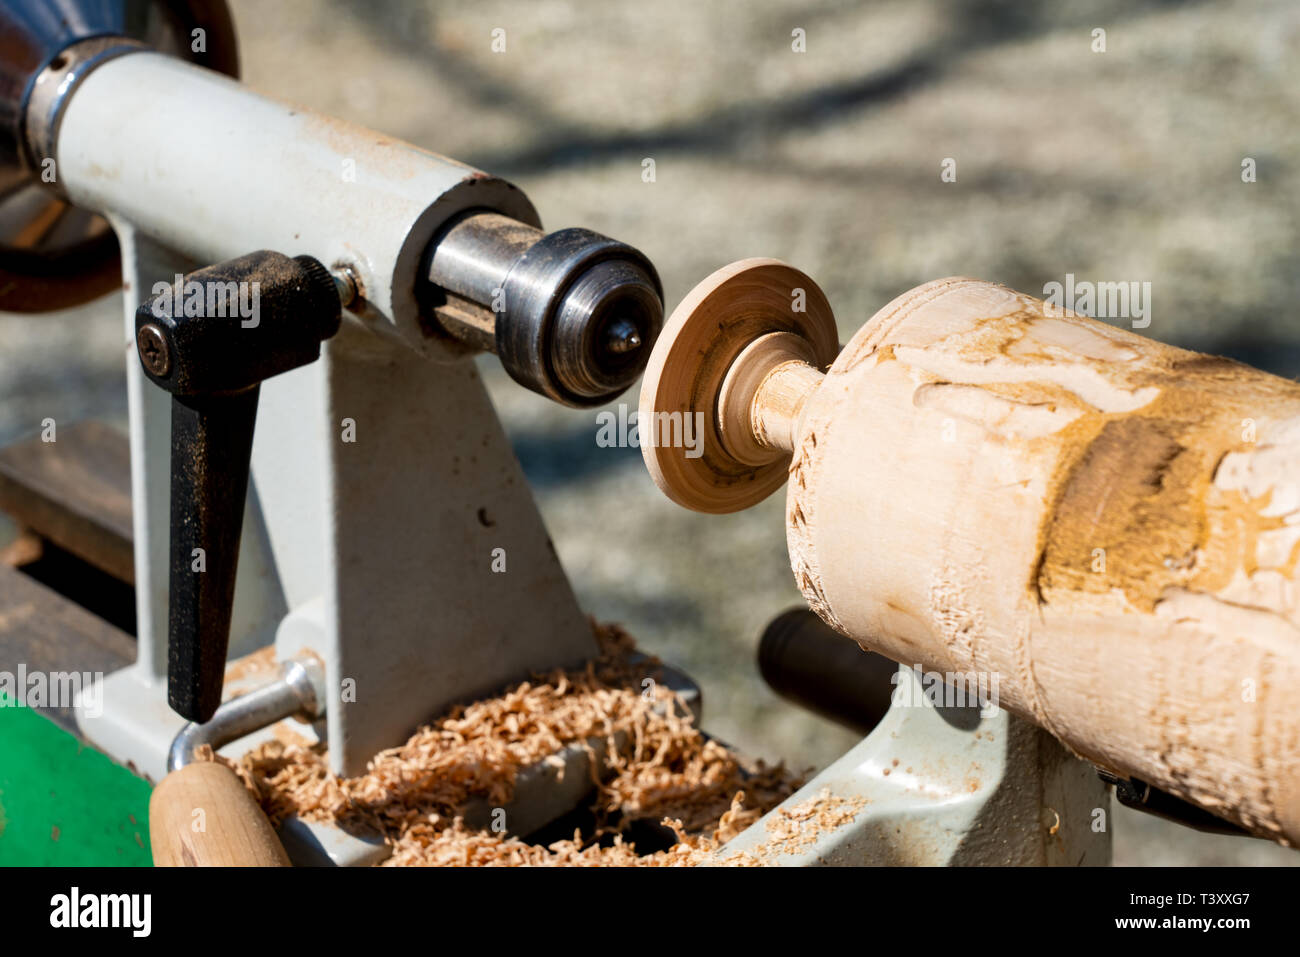 Tallando una barandilla de madera en pie torneado Foto de stock